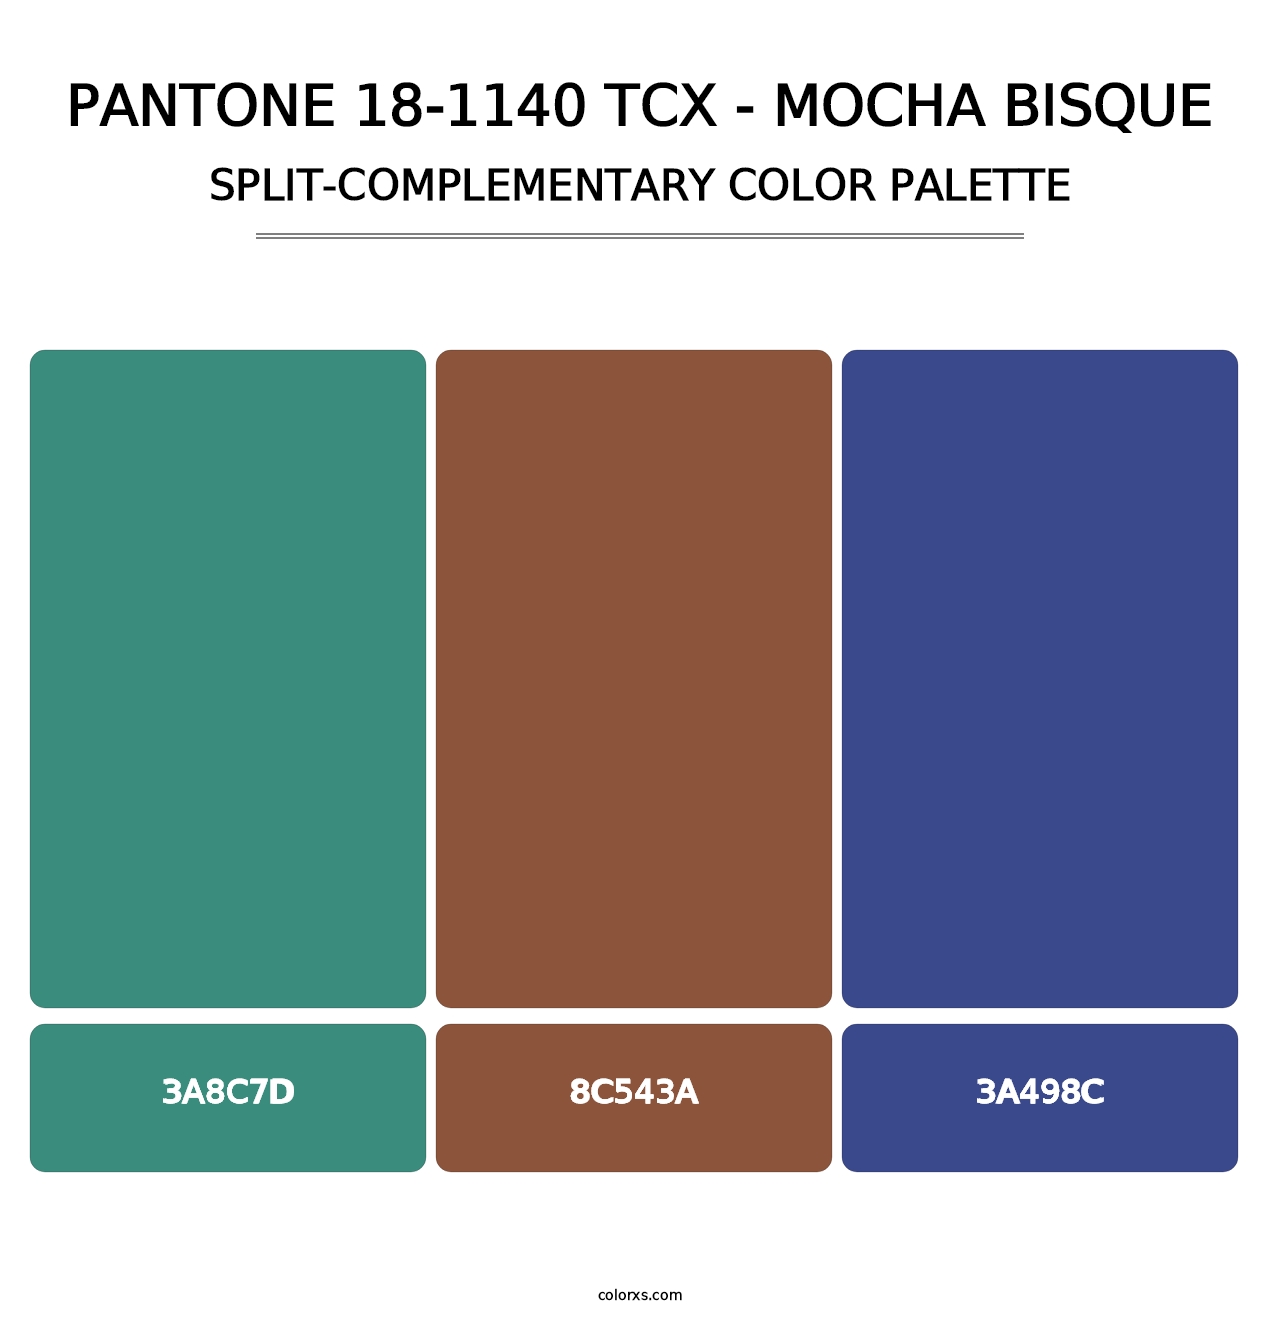 PANTONE 18-1140 TCX - Mocha Bisque - Split-Complementary Color Palette